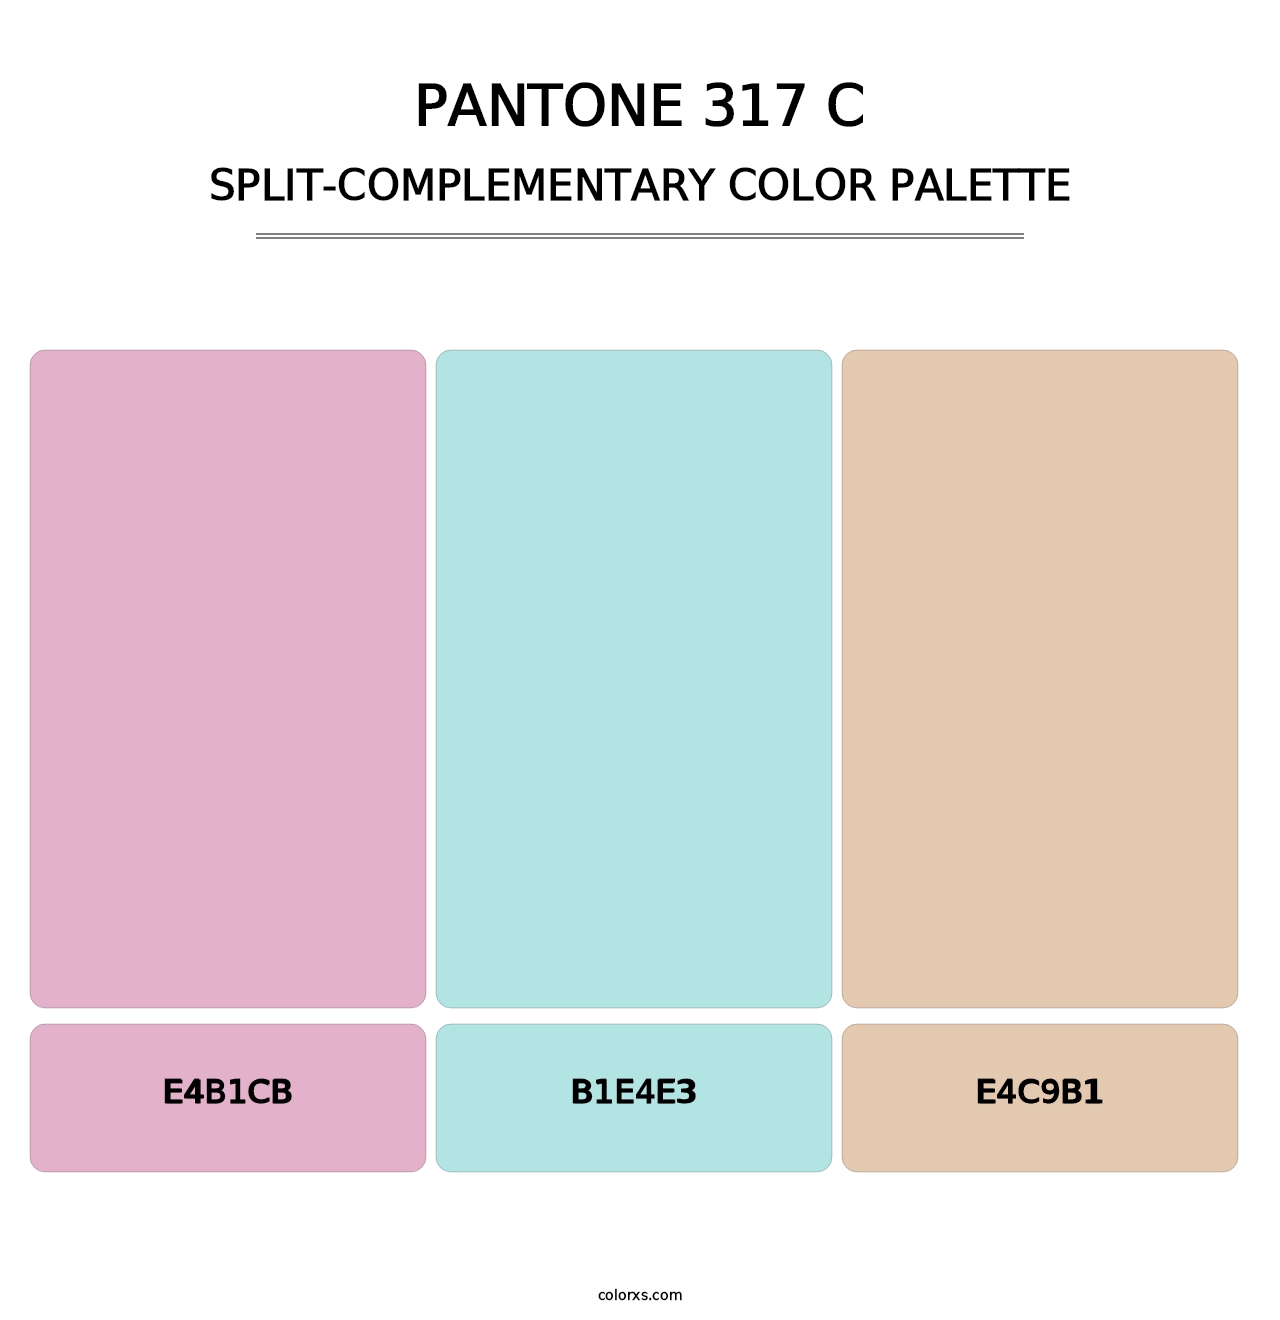 PANTONE 317 C - Split-Complementary Color Palette